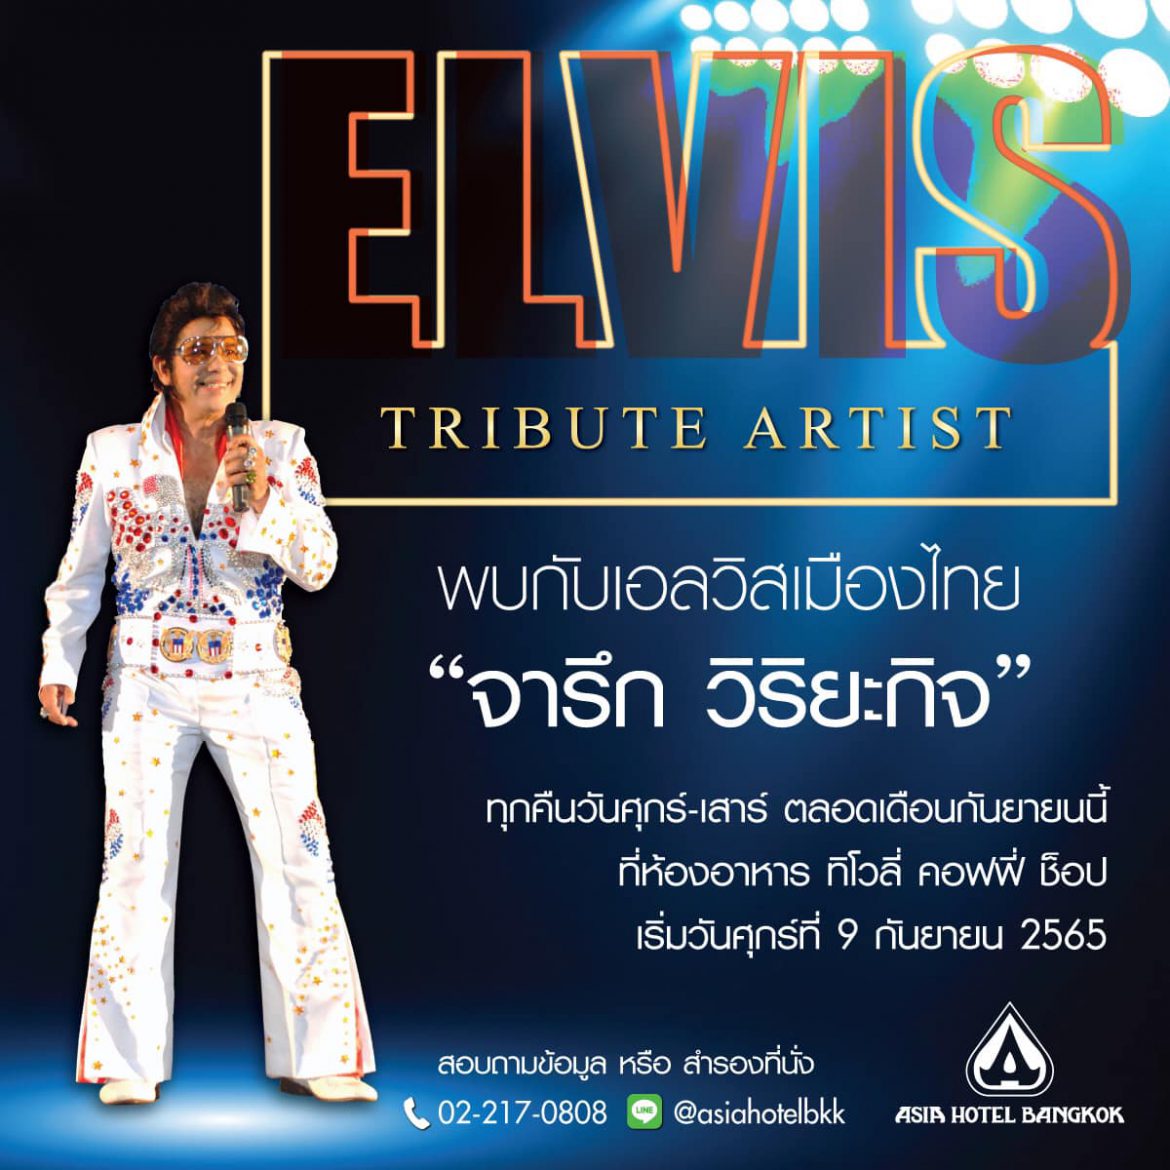 ‘จารึก วิริยะกิจ’ Elvis เมืองไทย ชวนหวนรำลึกราชาเพลงร็อก’ Elvis Presley’ โรงแแรมเอเชียกรุงเทพ